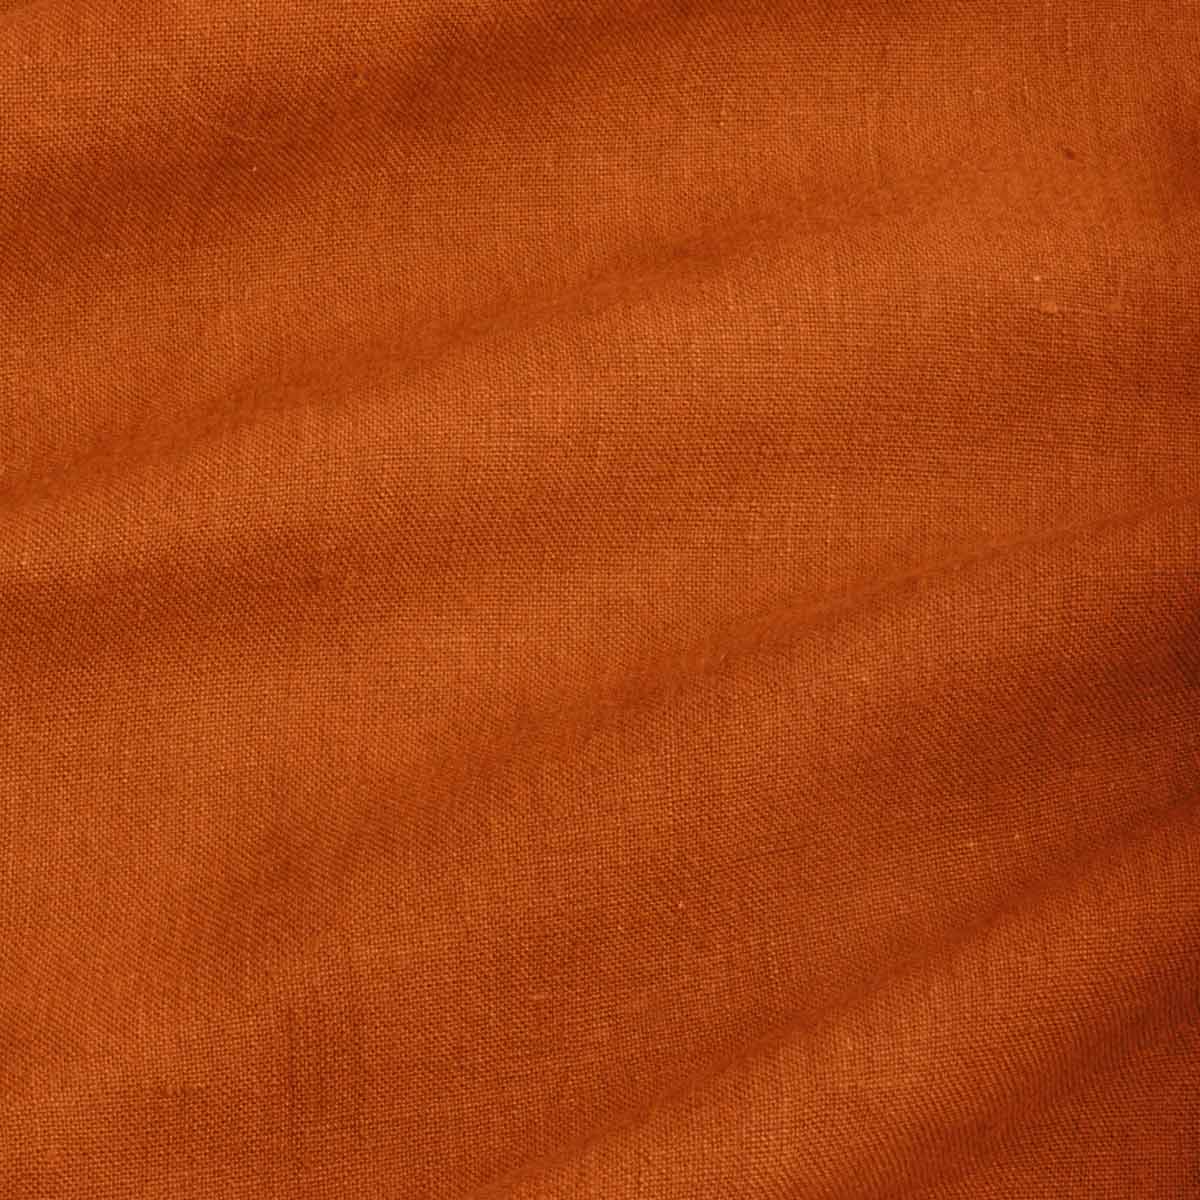 Tact Er is een trend voetstuk Honderd procent hennep stof in oranje kleur